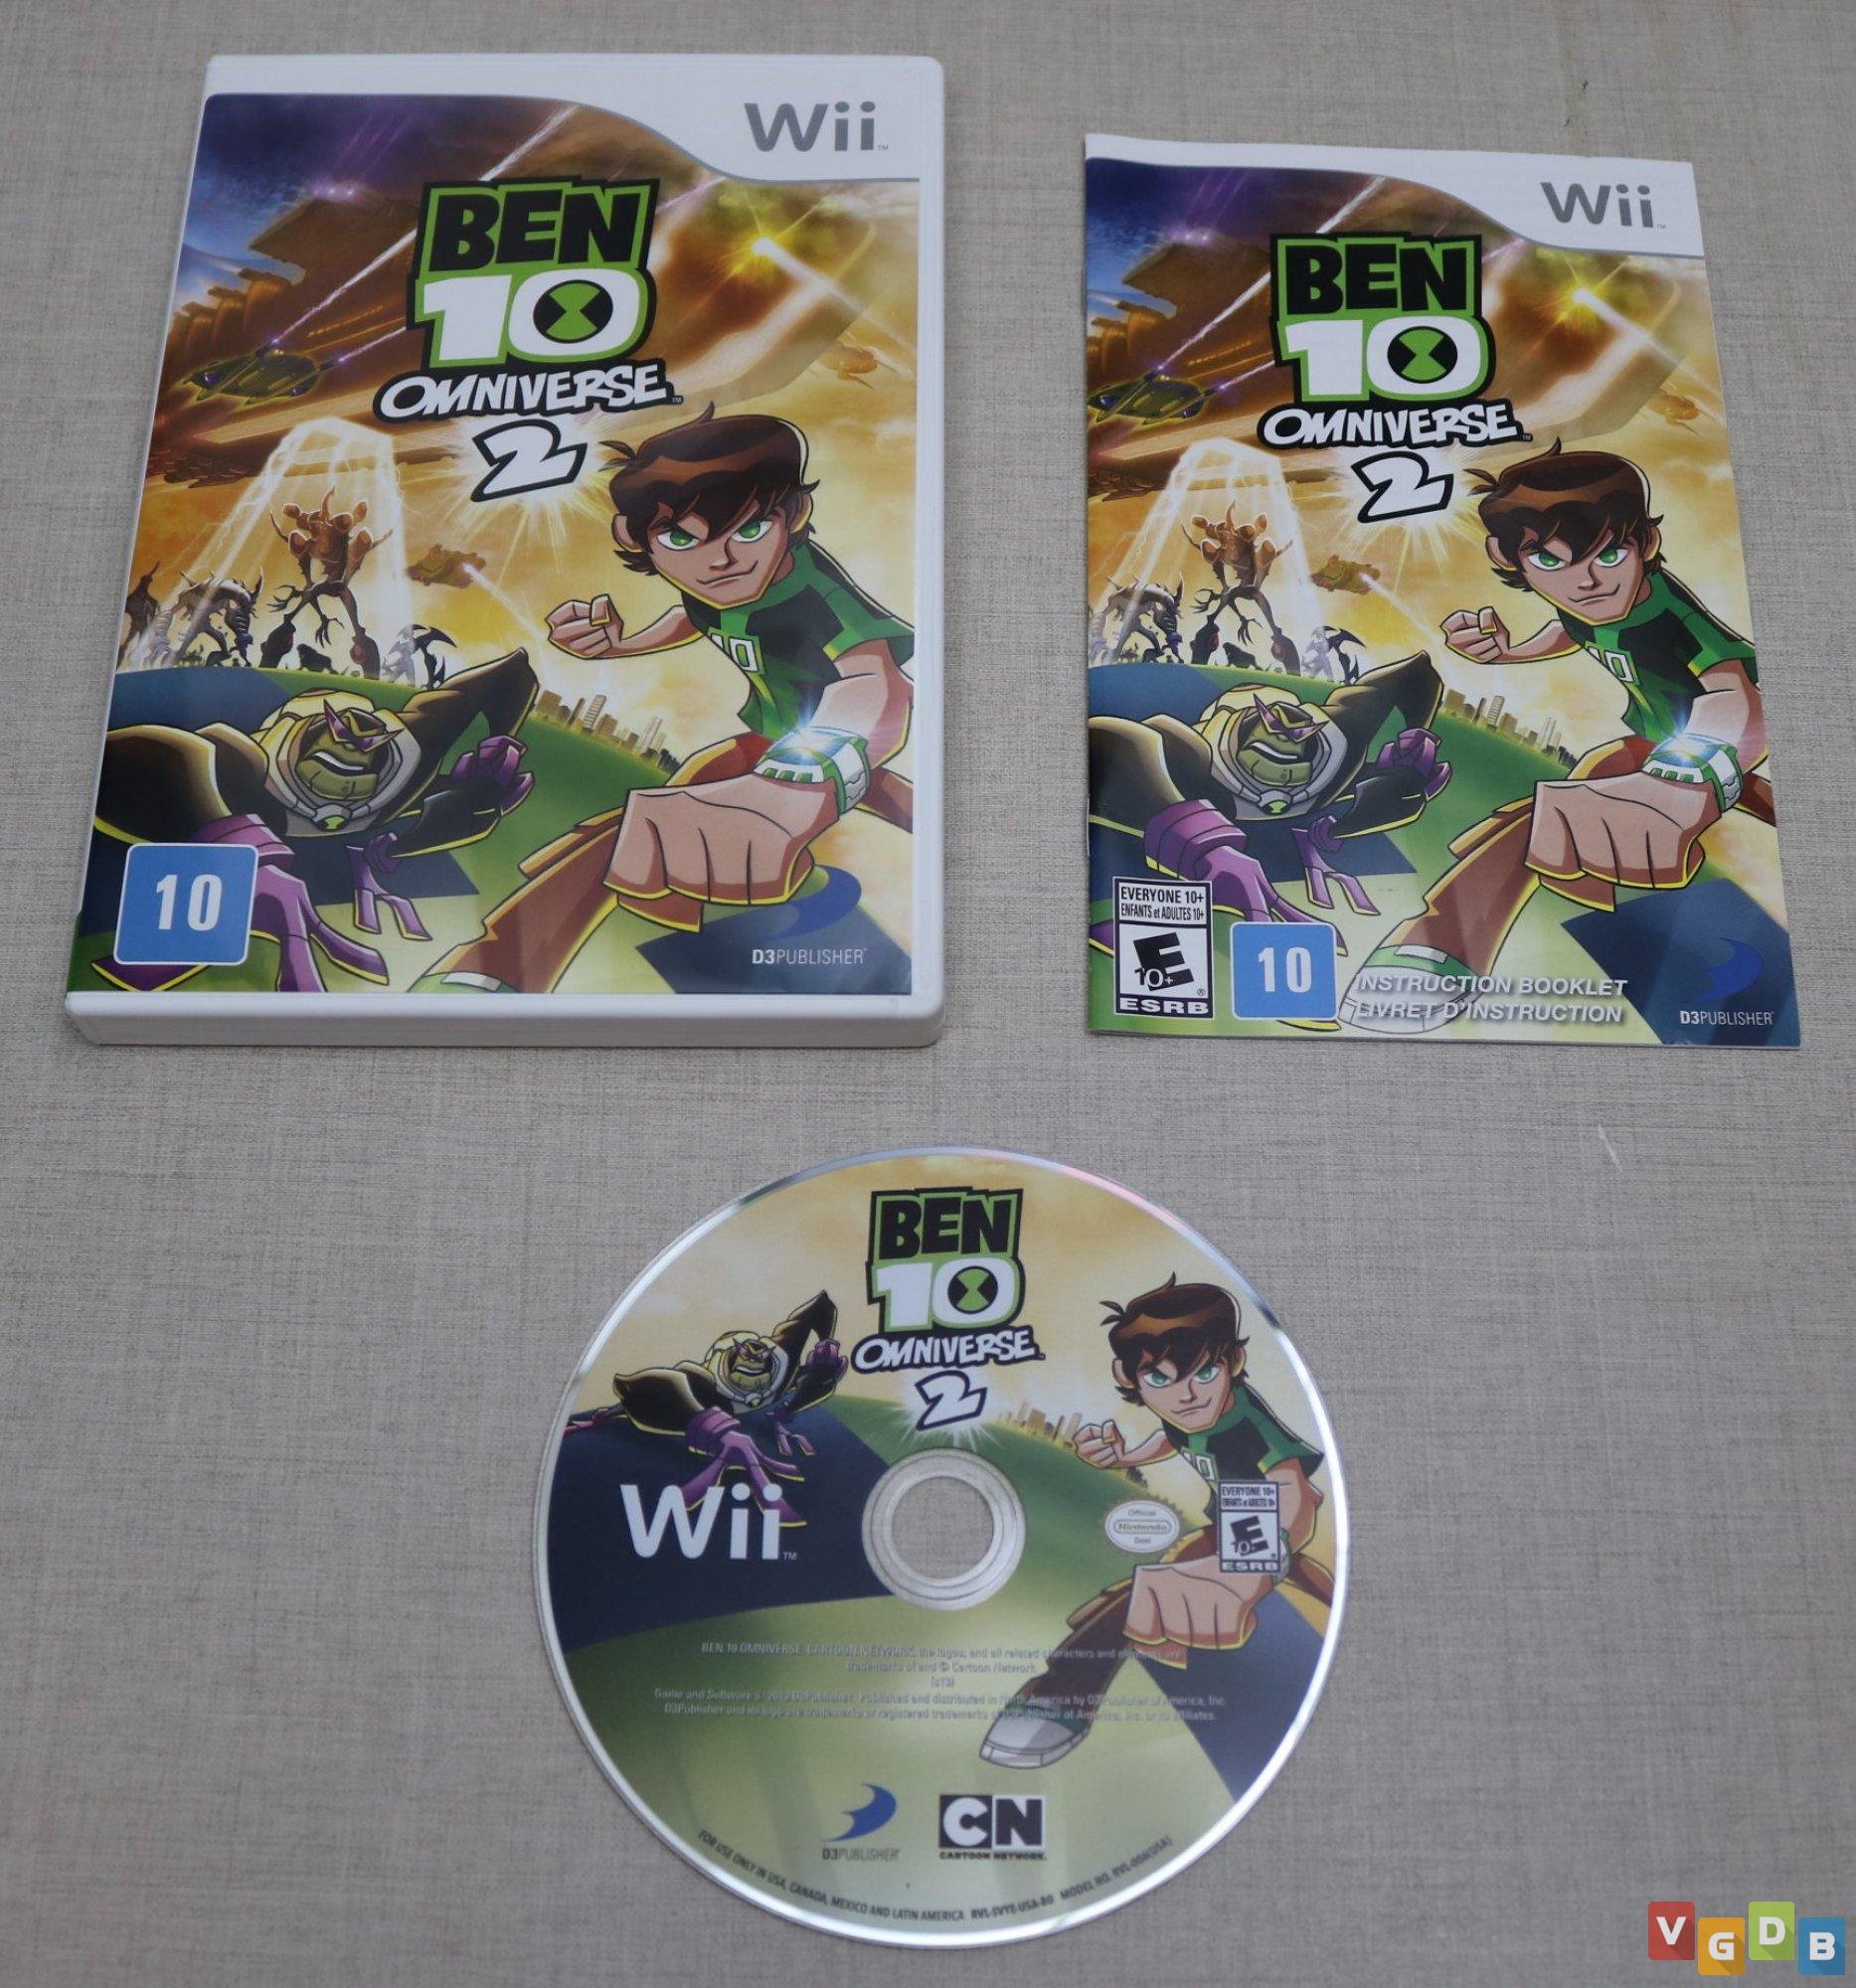  Ben 10 Omniverse - Nintendo Wii U : D3 Publisher of